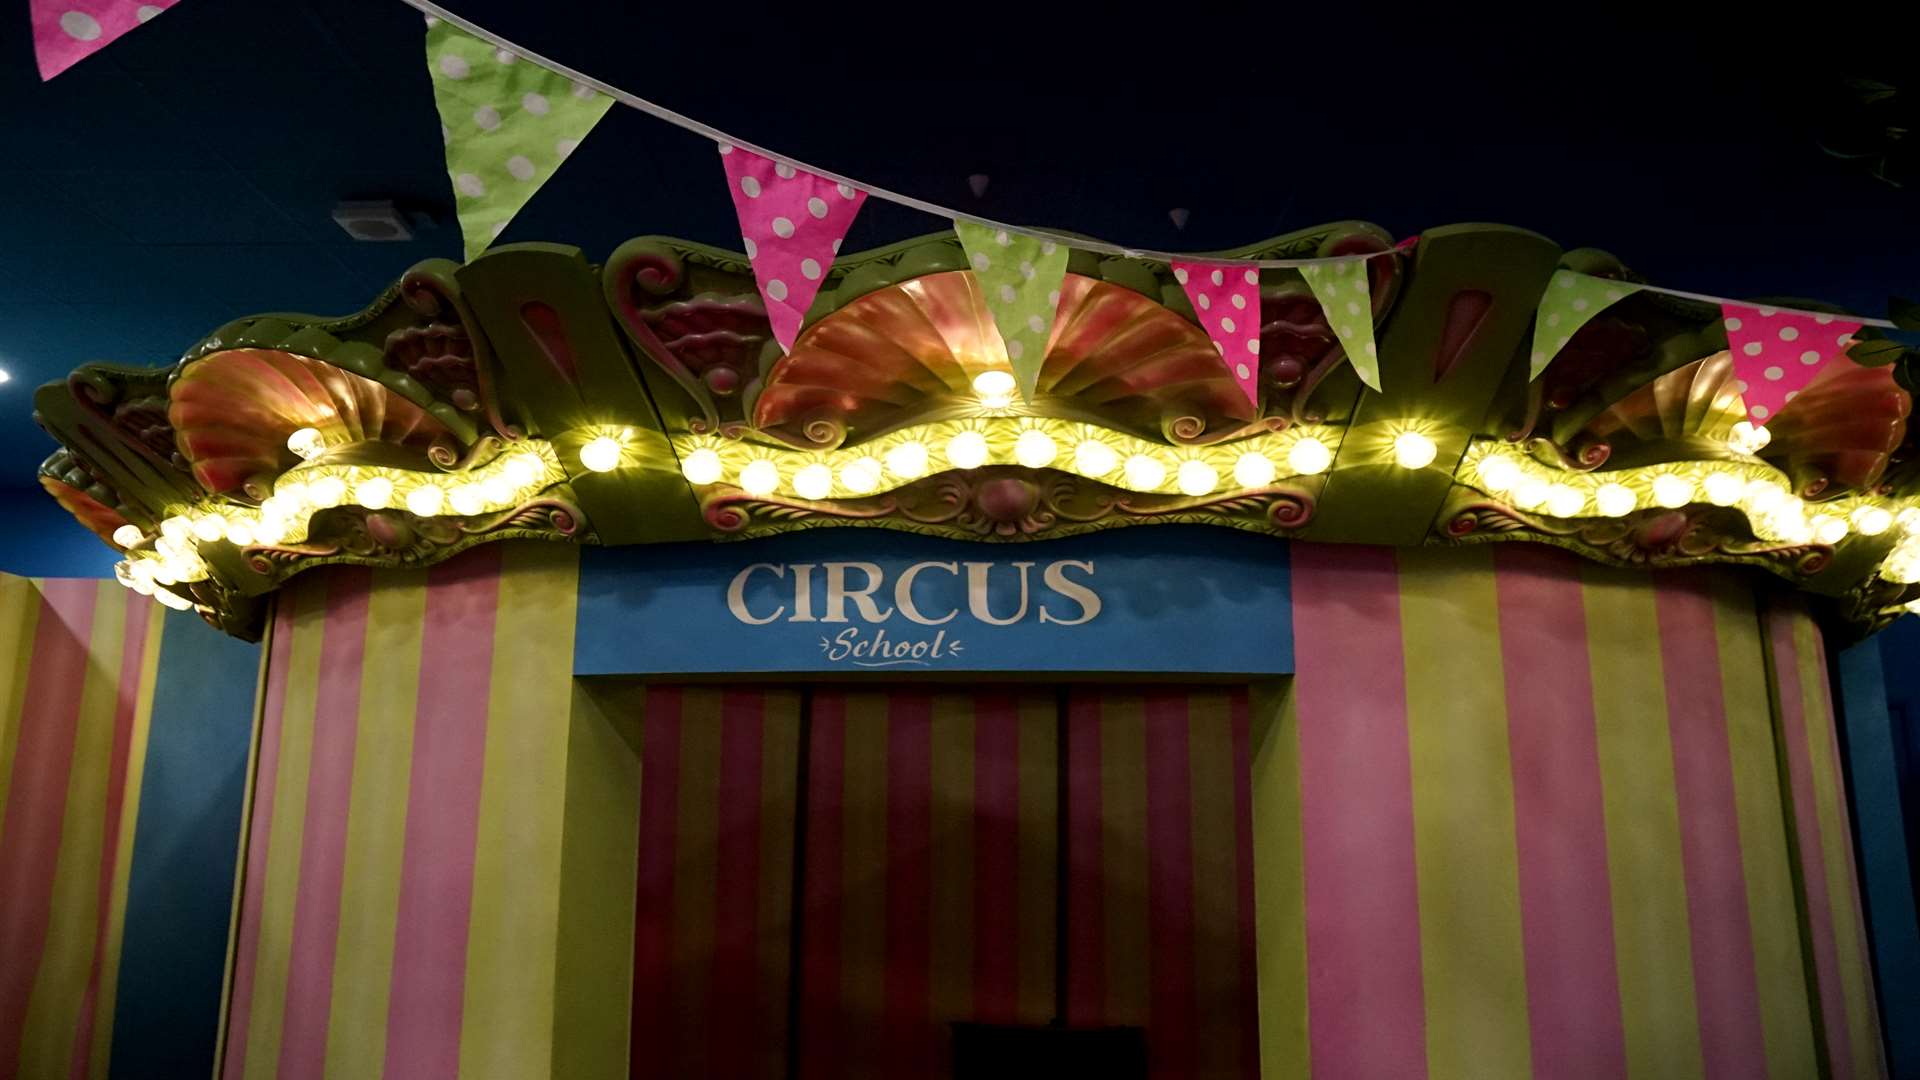 Circus fun at the Octopus's Garden